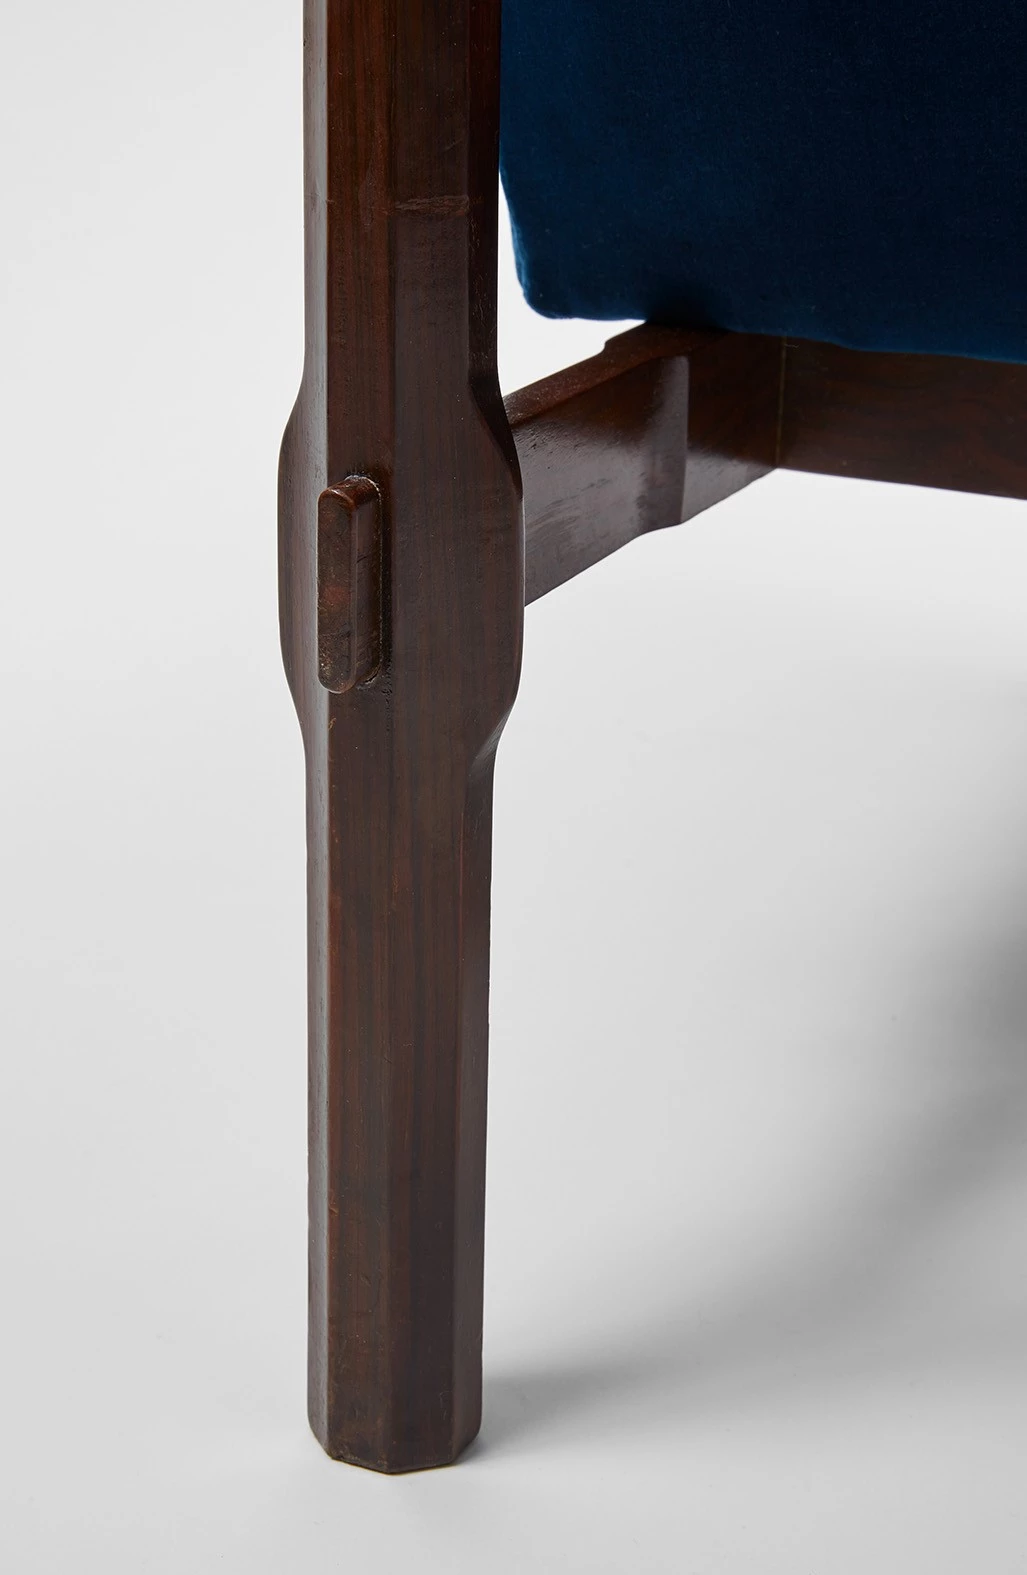 Armchair model n°869 - Ico & Luisa Parisi  - Armchair - Galerie kreo